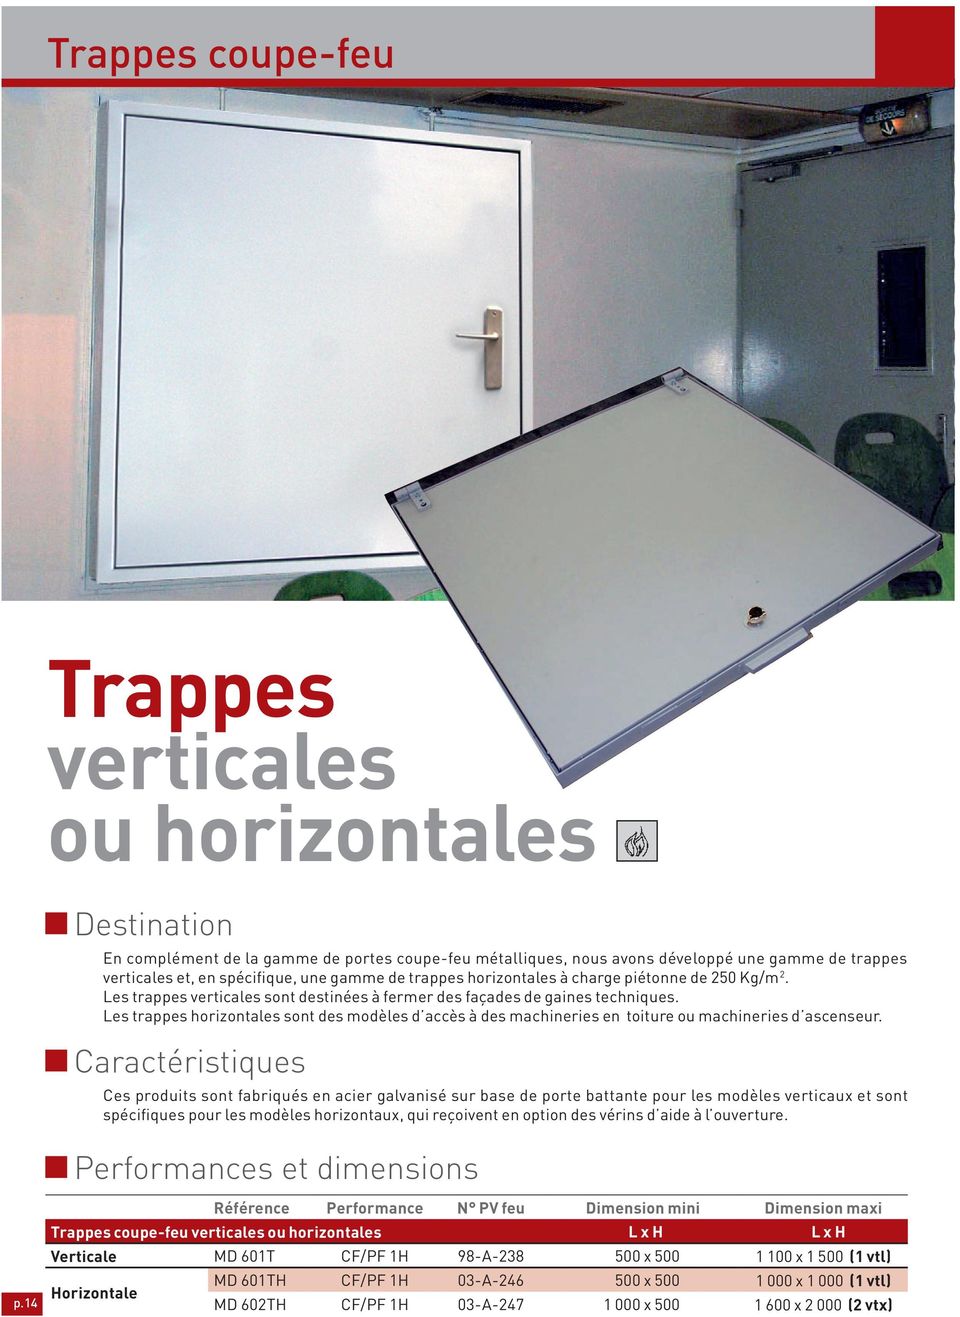 Les trappes horizontales sont des modèles d accès à des machineries en toiture ou machineries d ascenseur.